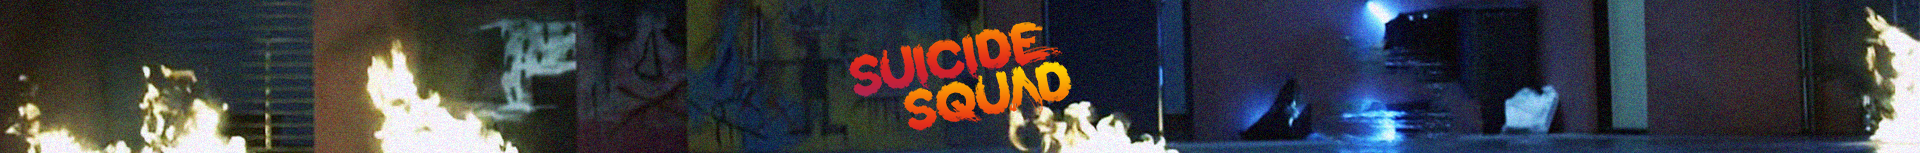 SUICIDE SQUAD BTS - EPISODE 1